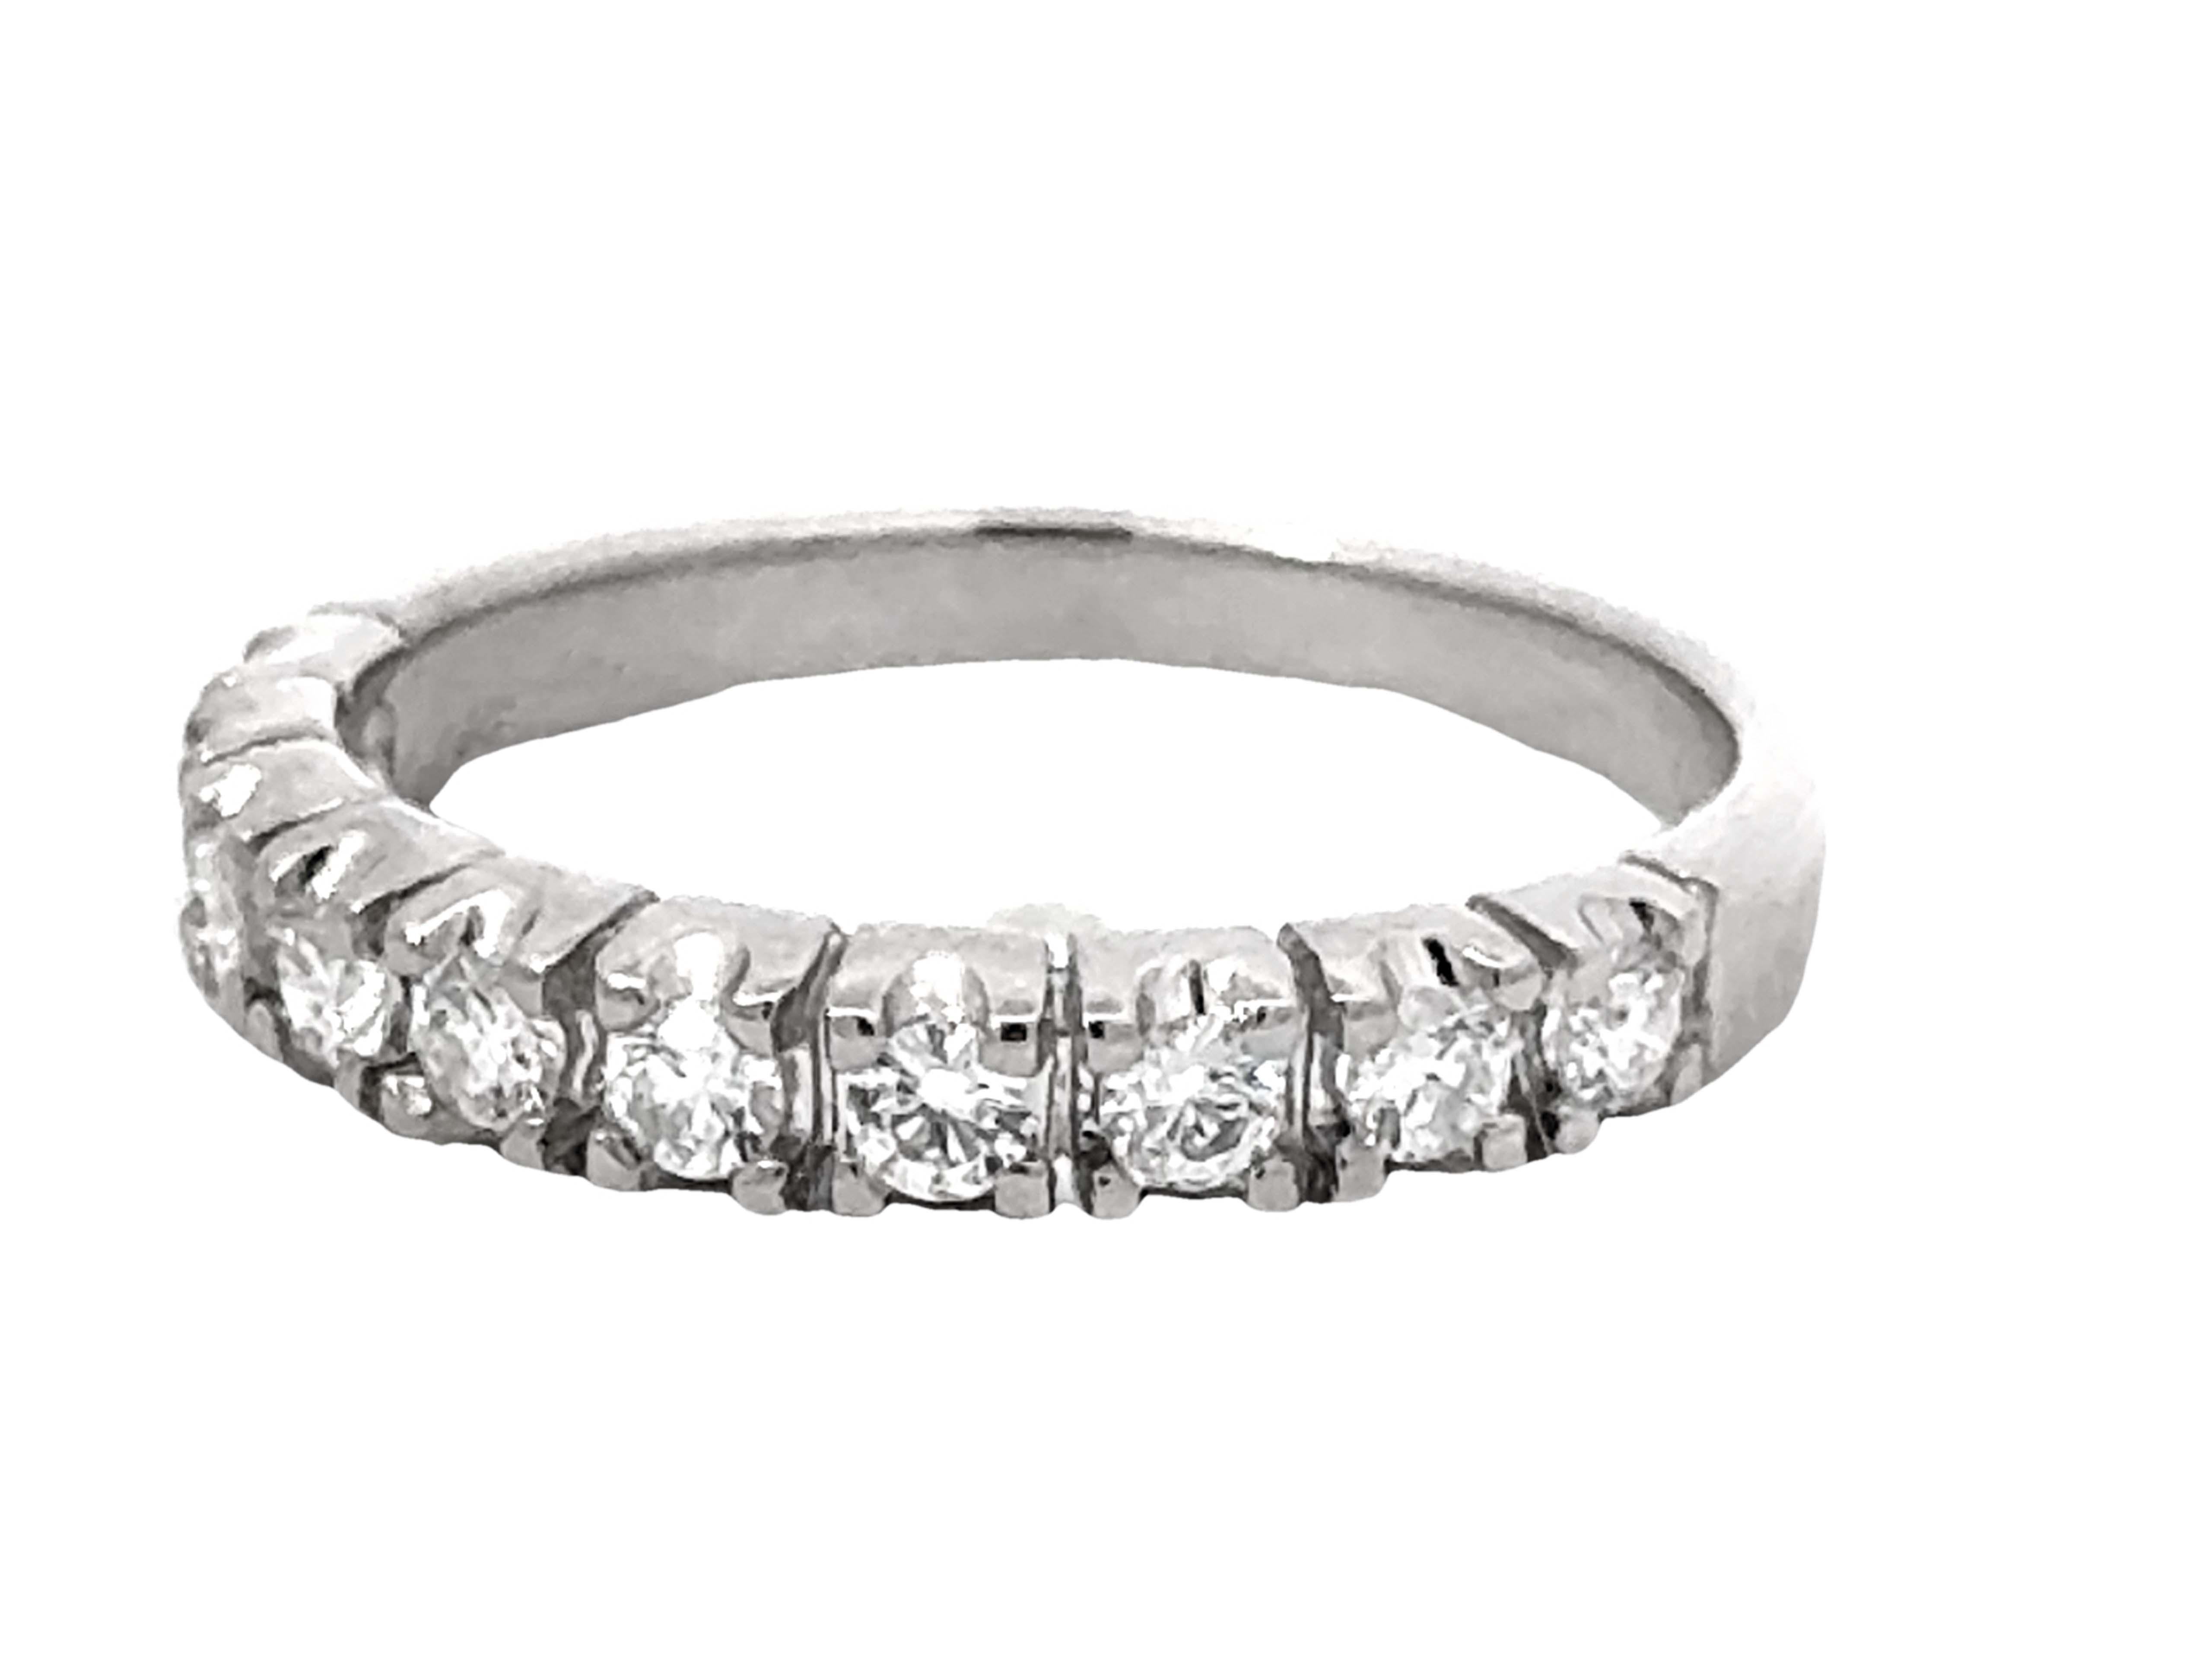 Brilliant Cut 10 Brilliant Diamond Band Ring 18k White Gold For Sale